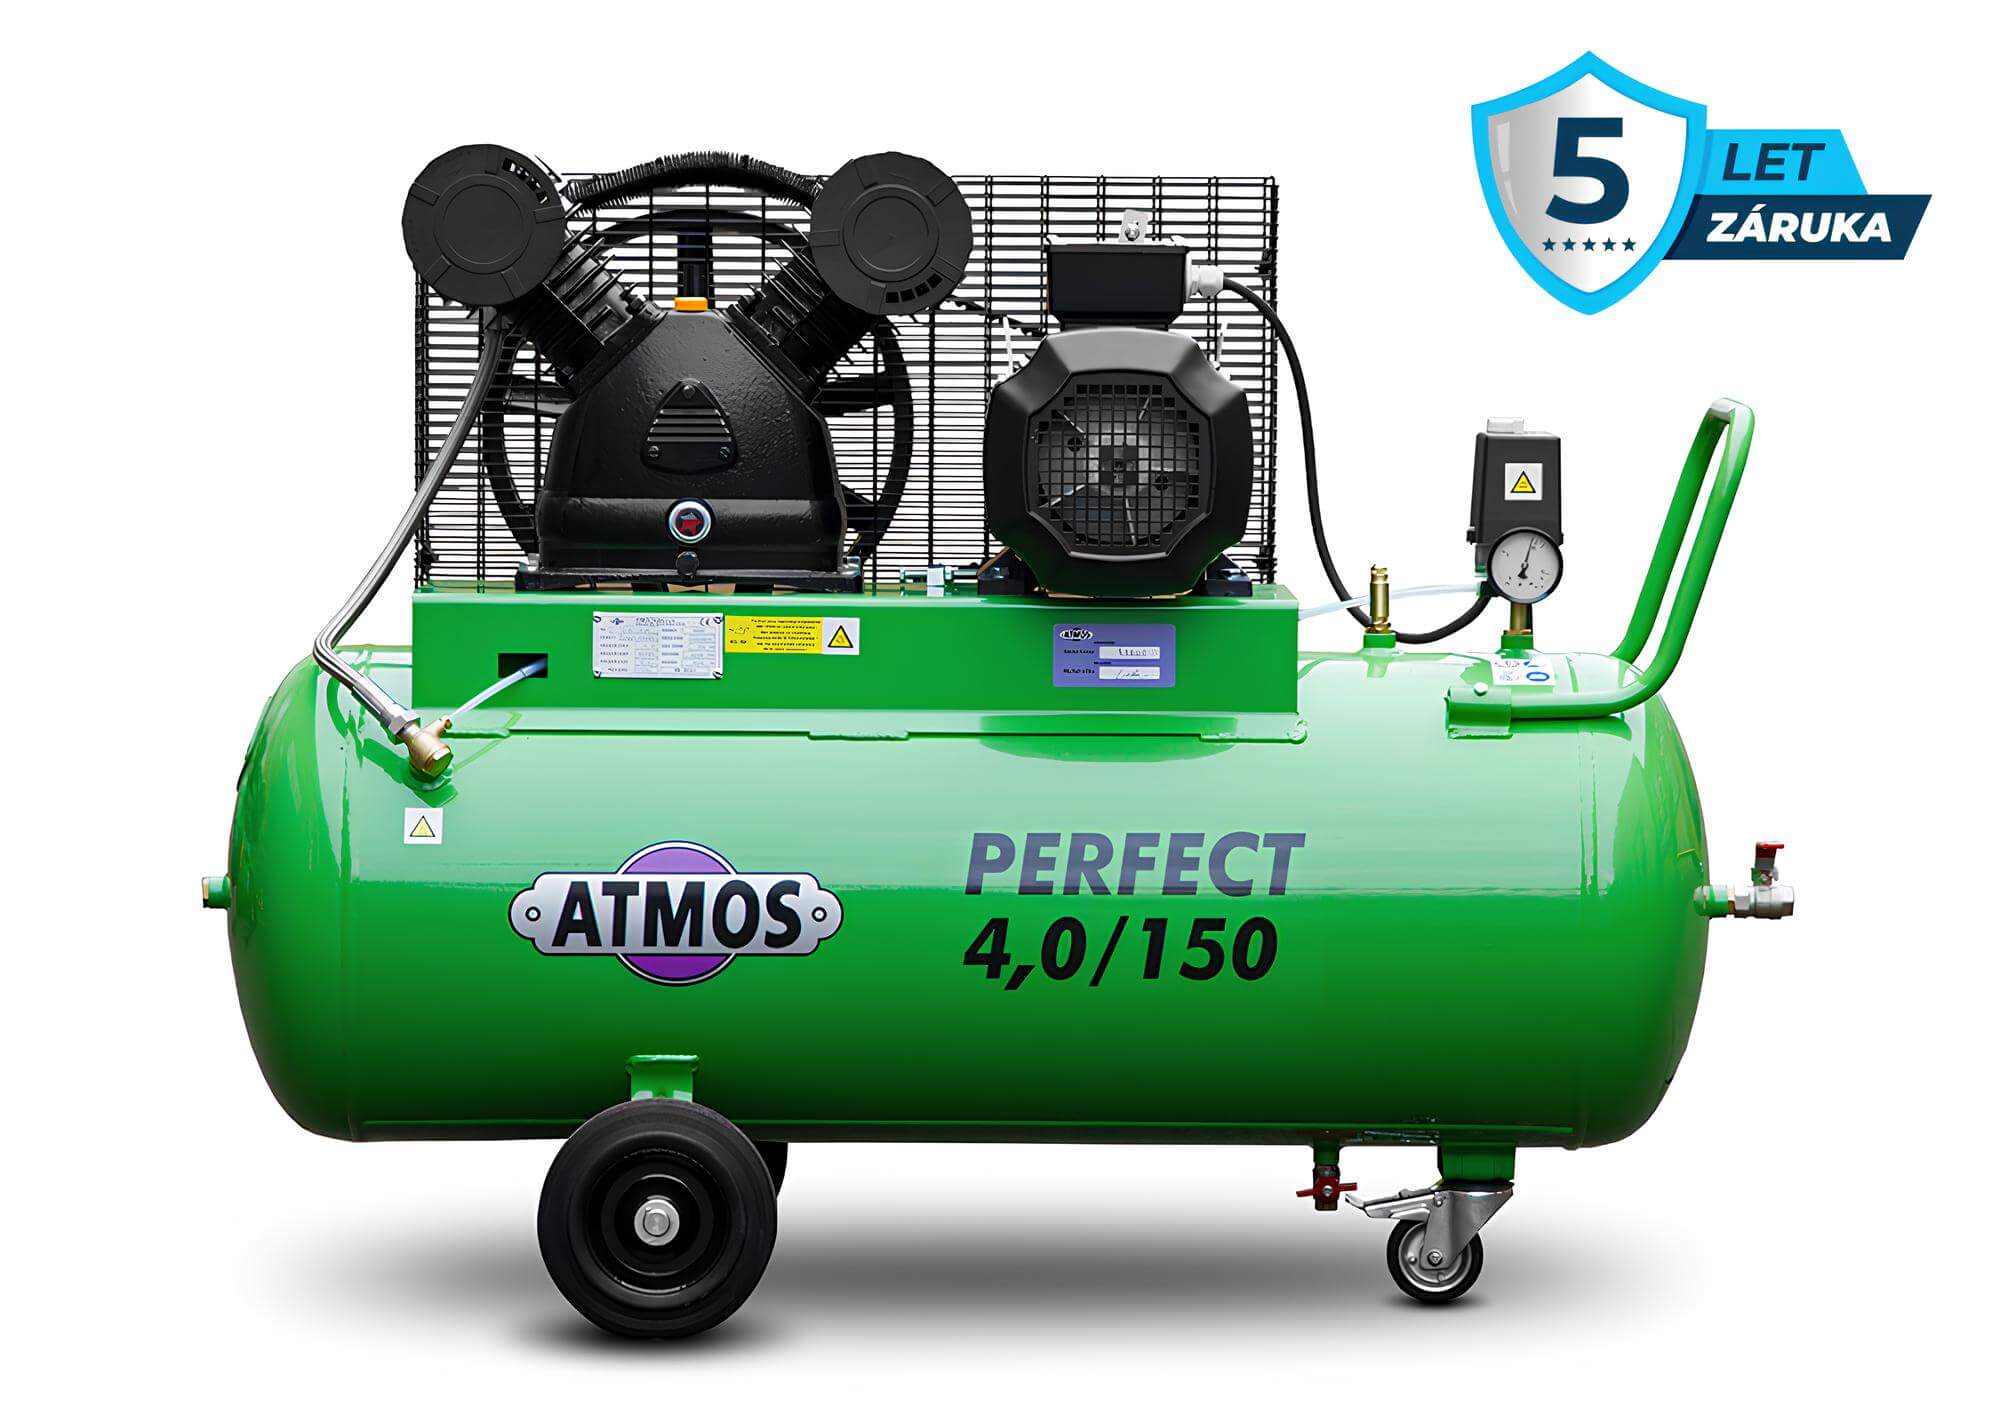 Atmos Pístový kompresor Perfect - 4/150 příkon 4,0 kW, výkon 650 l/min, tlak 10 bar, vzdušník 150 l, napětí 400/50 V/Hz